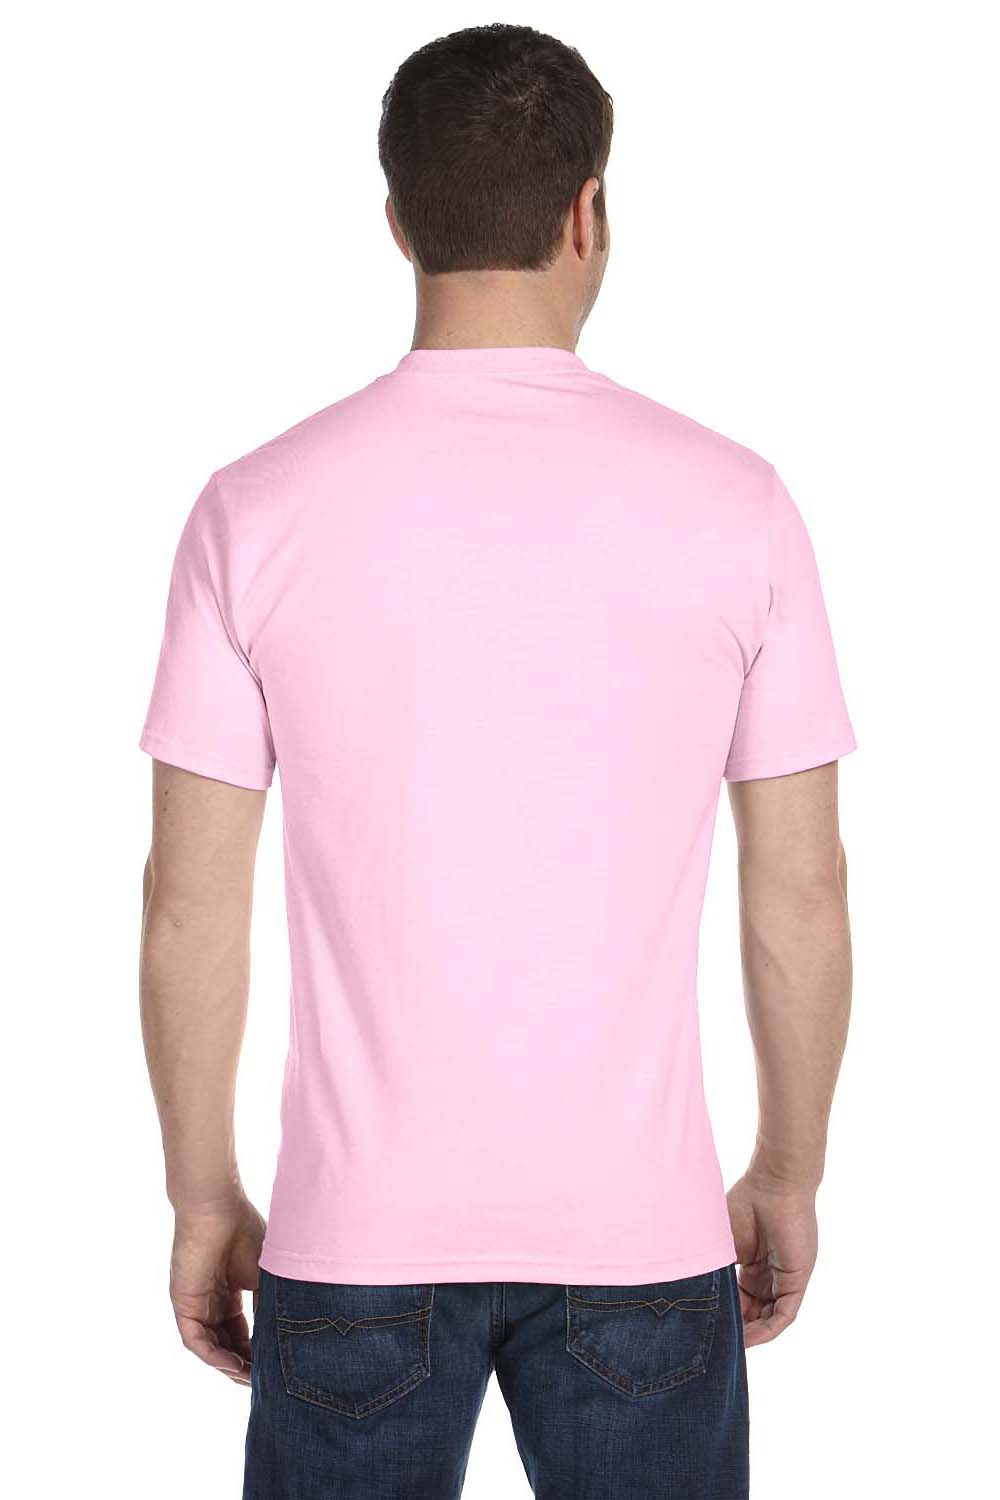 Gildan Men's DryBlend T-Shirt - Light Pink - XL - 8000